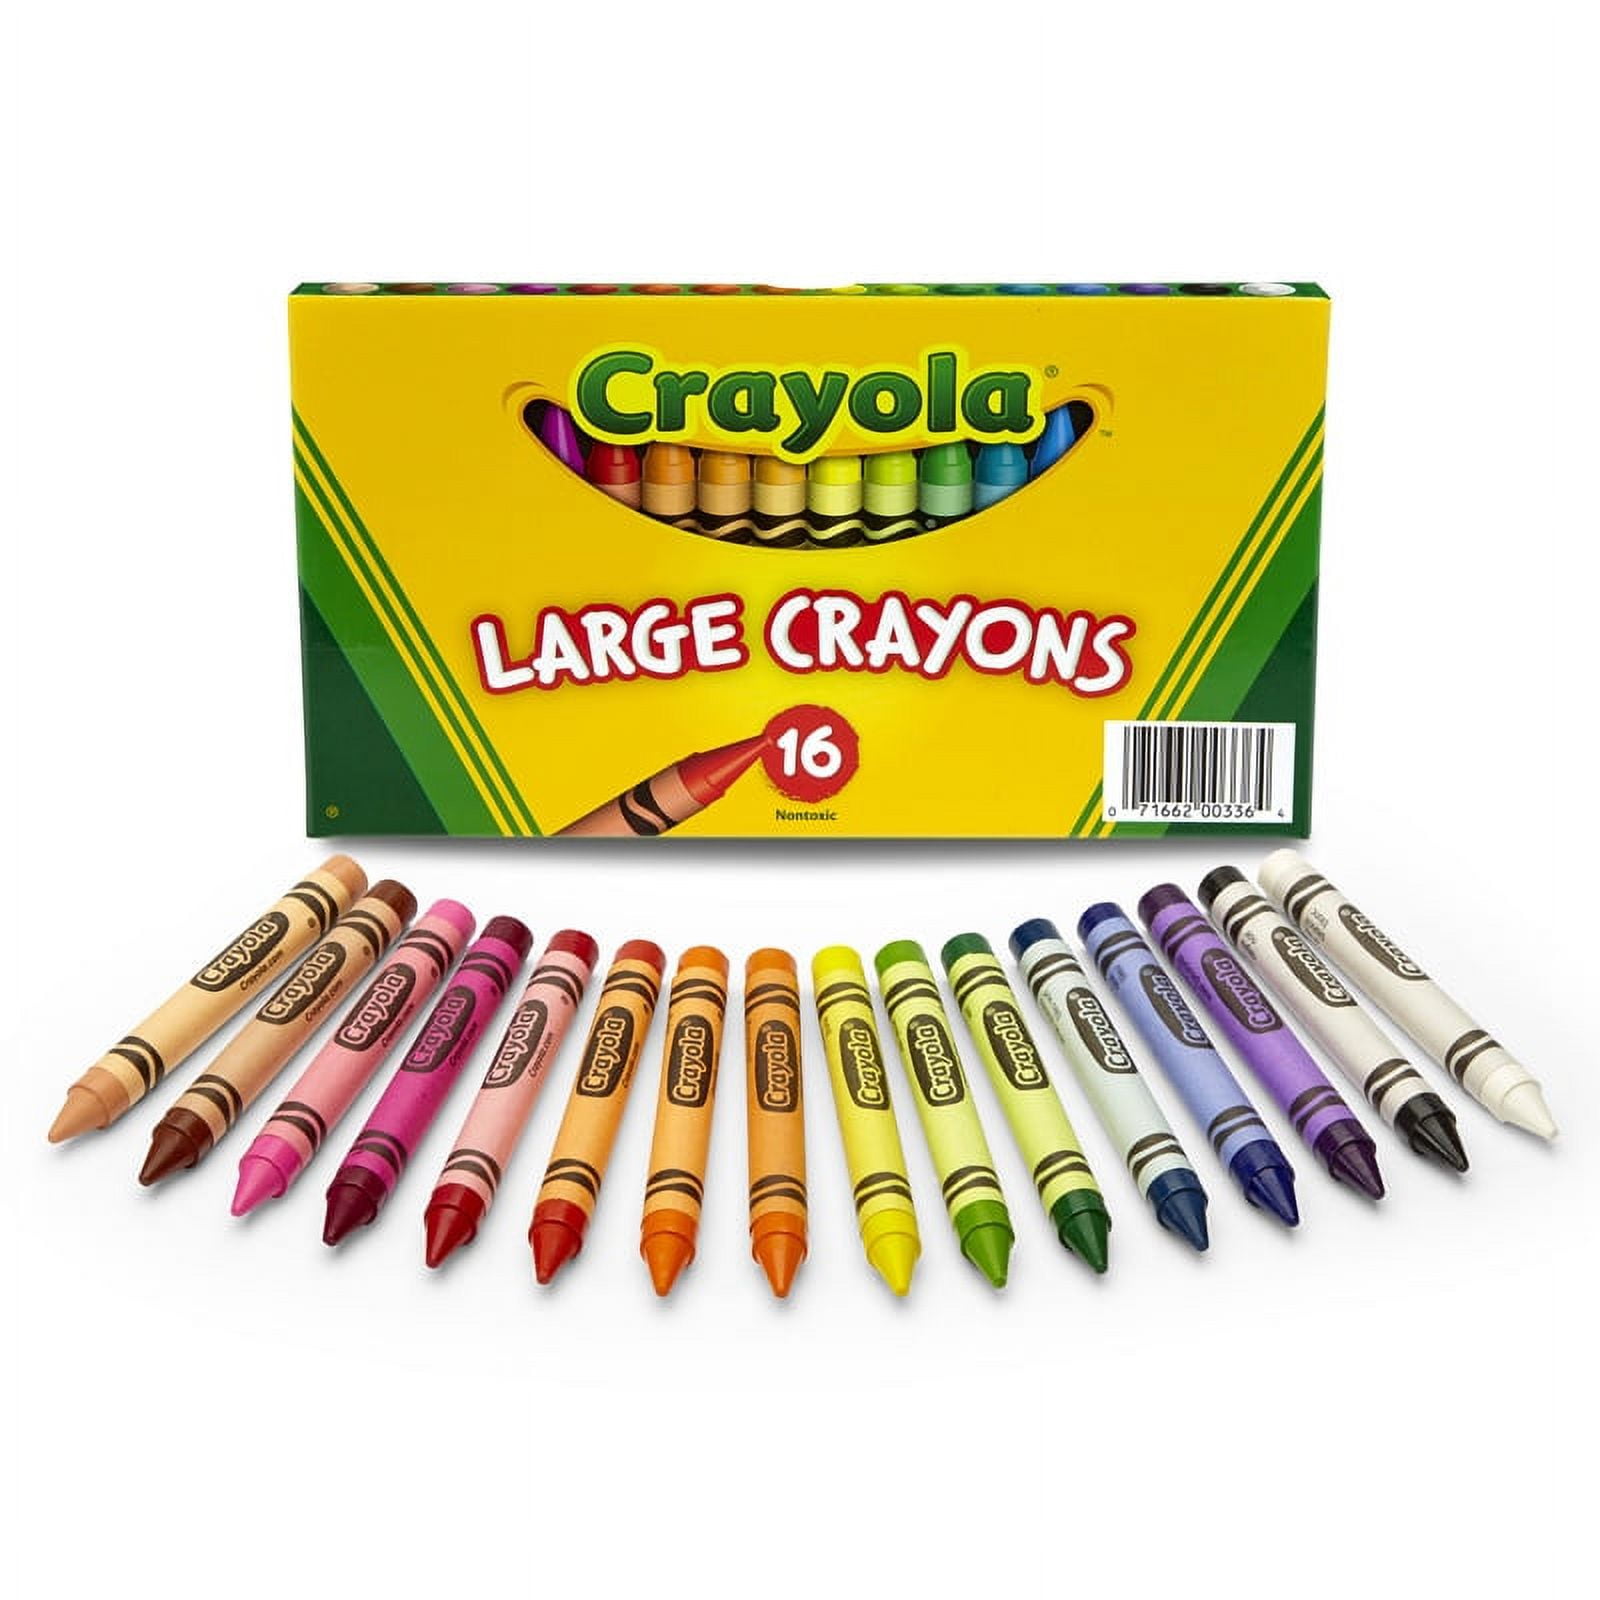 Crayola Window Crayons - 5 crayons